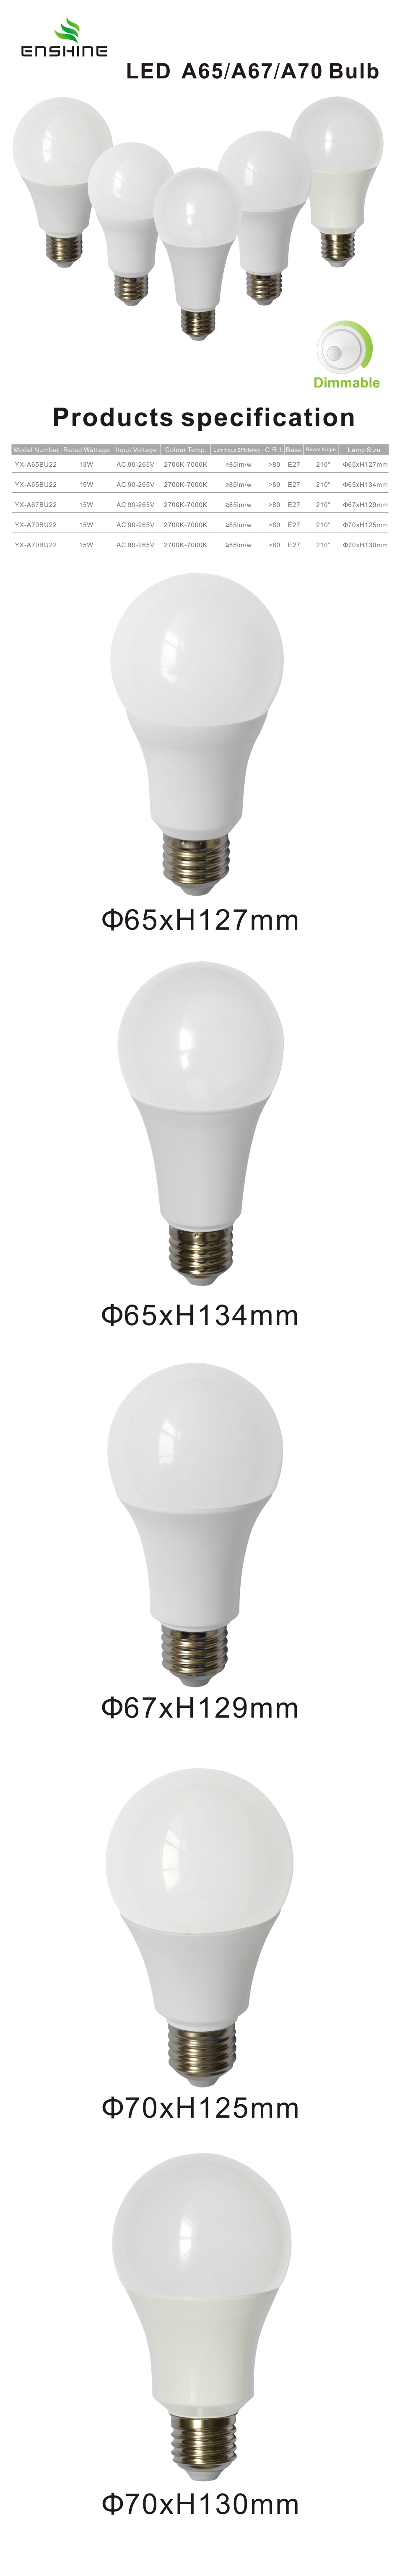 13-15W LED A65 dimmable bulbs YX-A65/A70BU22